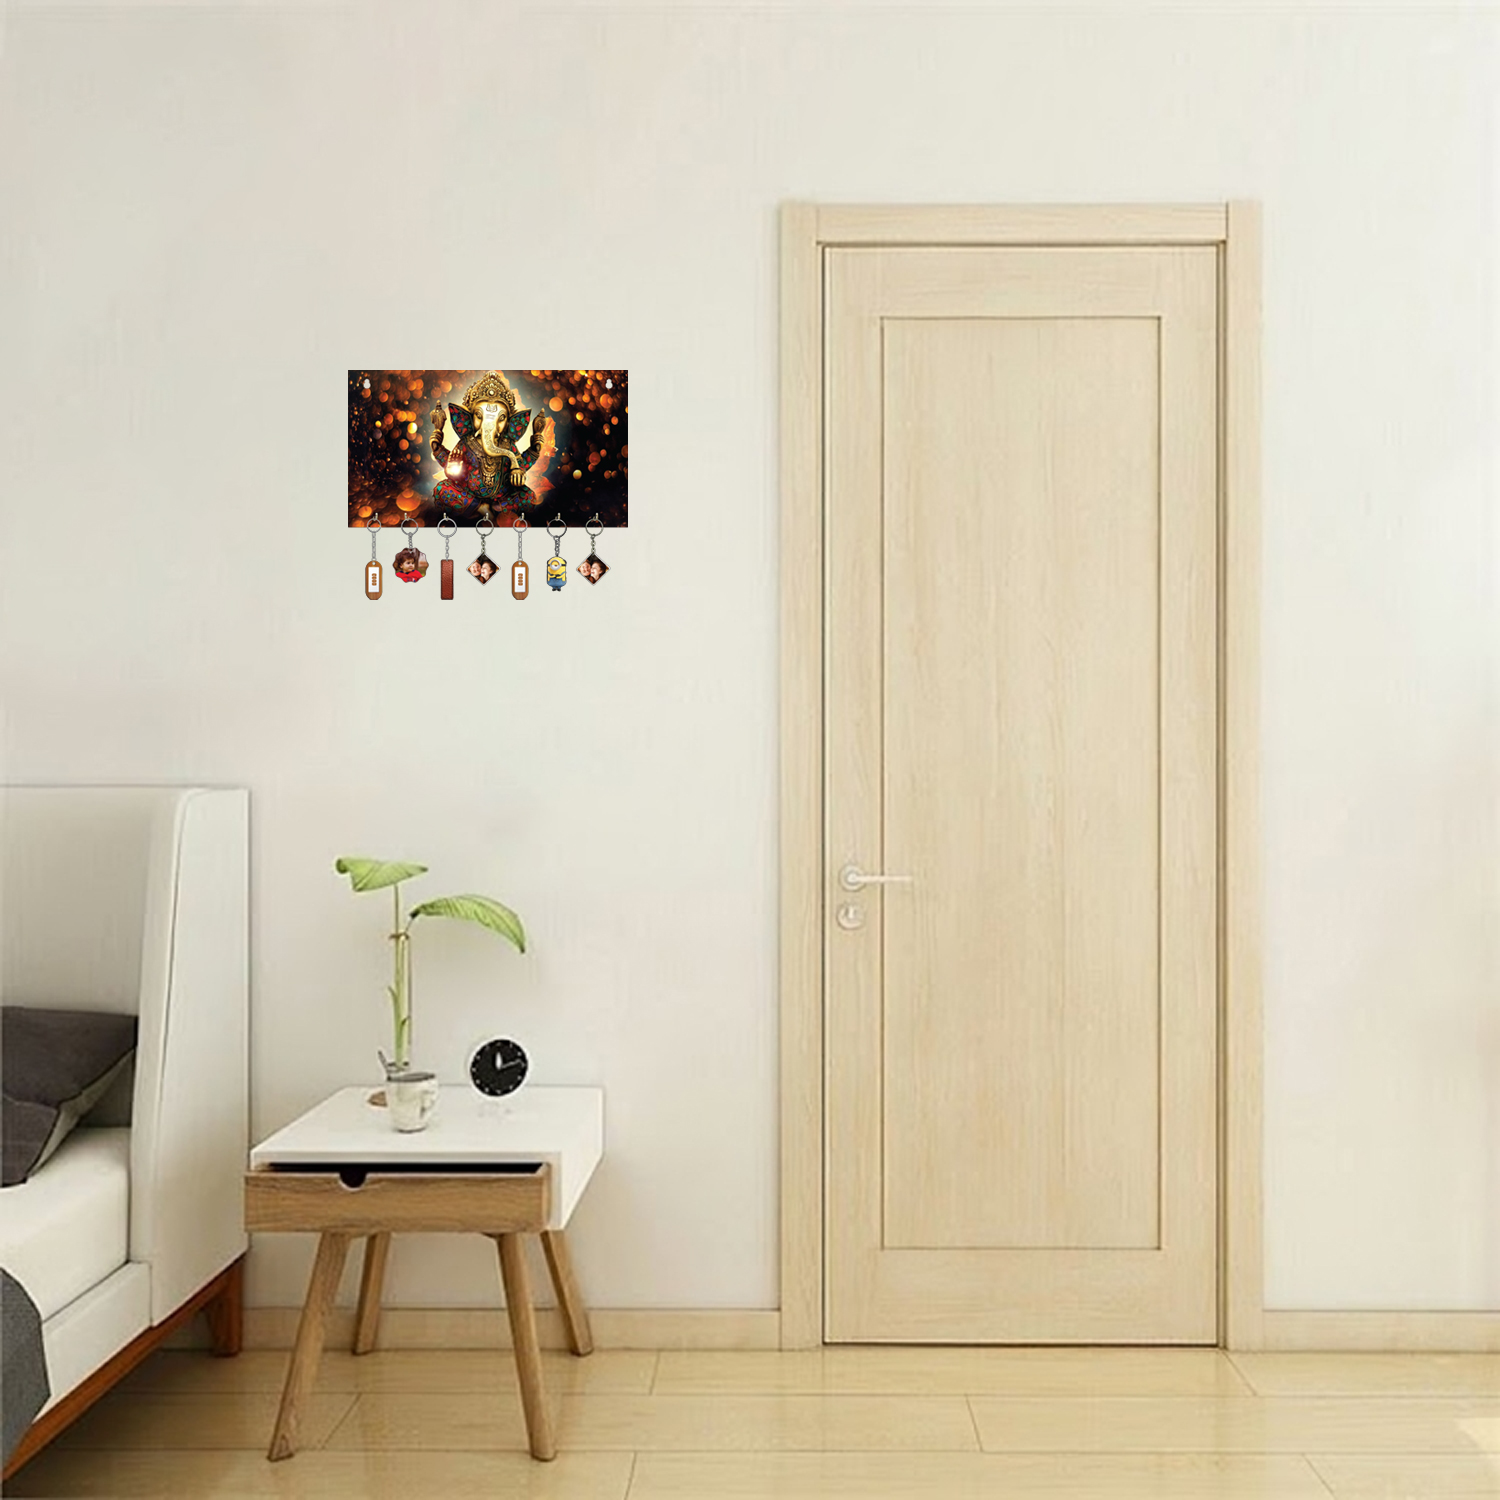 Ganesh Ji Wooden Key Holder For Decor / Living Room